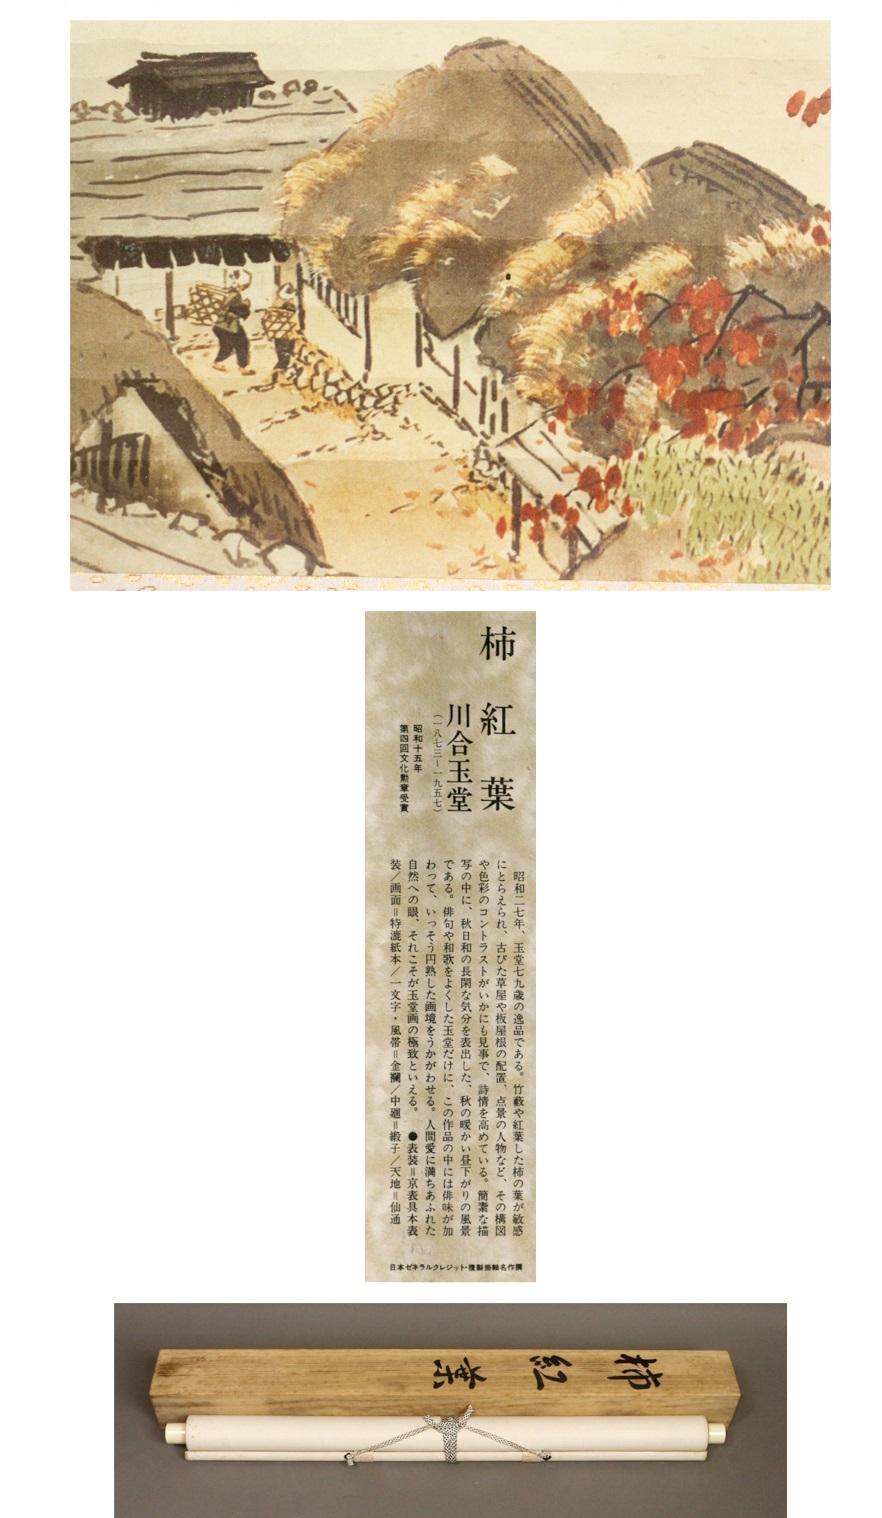 Kawai Gyokudo ( ?? ? ?, 24 novembre 1873-30 juin 1957) est le pseudonyme d'un peintre japonais de l'école Nihongo, actif de la période Meiji à la période Showa. Son vrai nom était Kawai Yoshisaburo.
Contenu


Biographie

Gyokudo est né dans ce